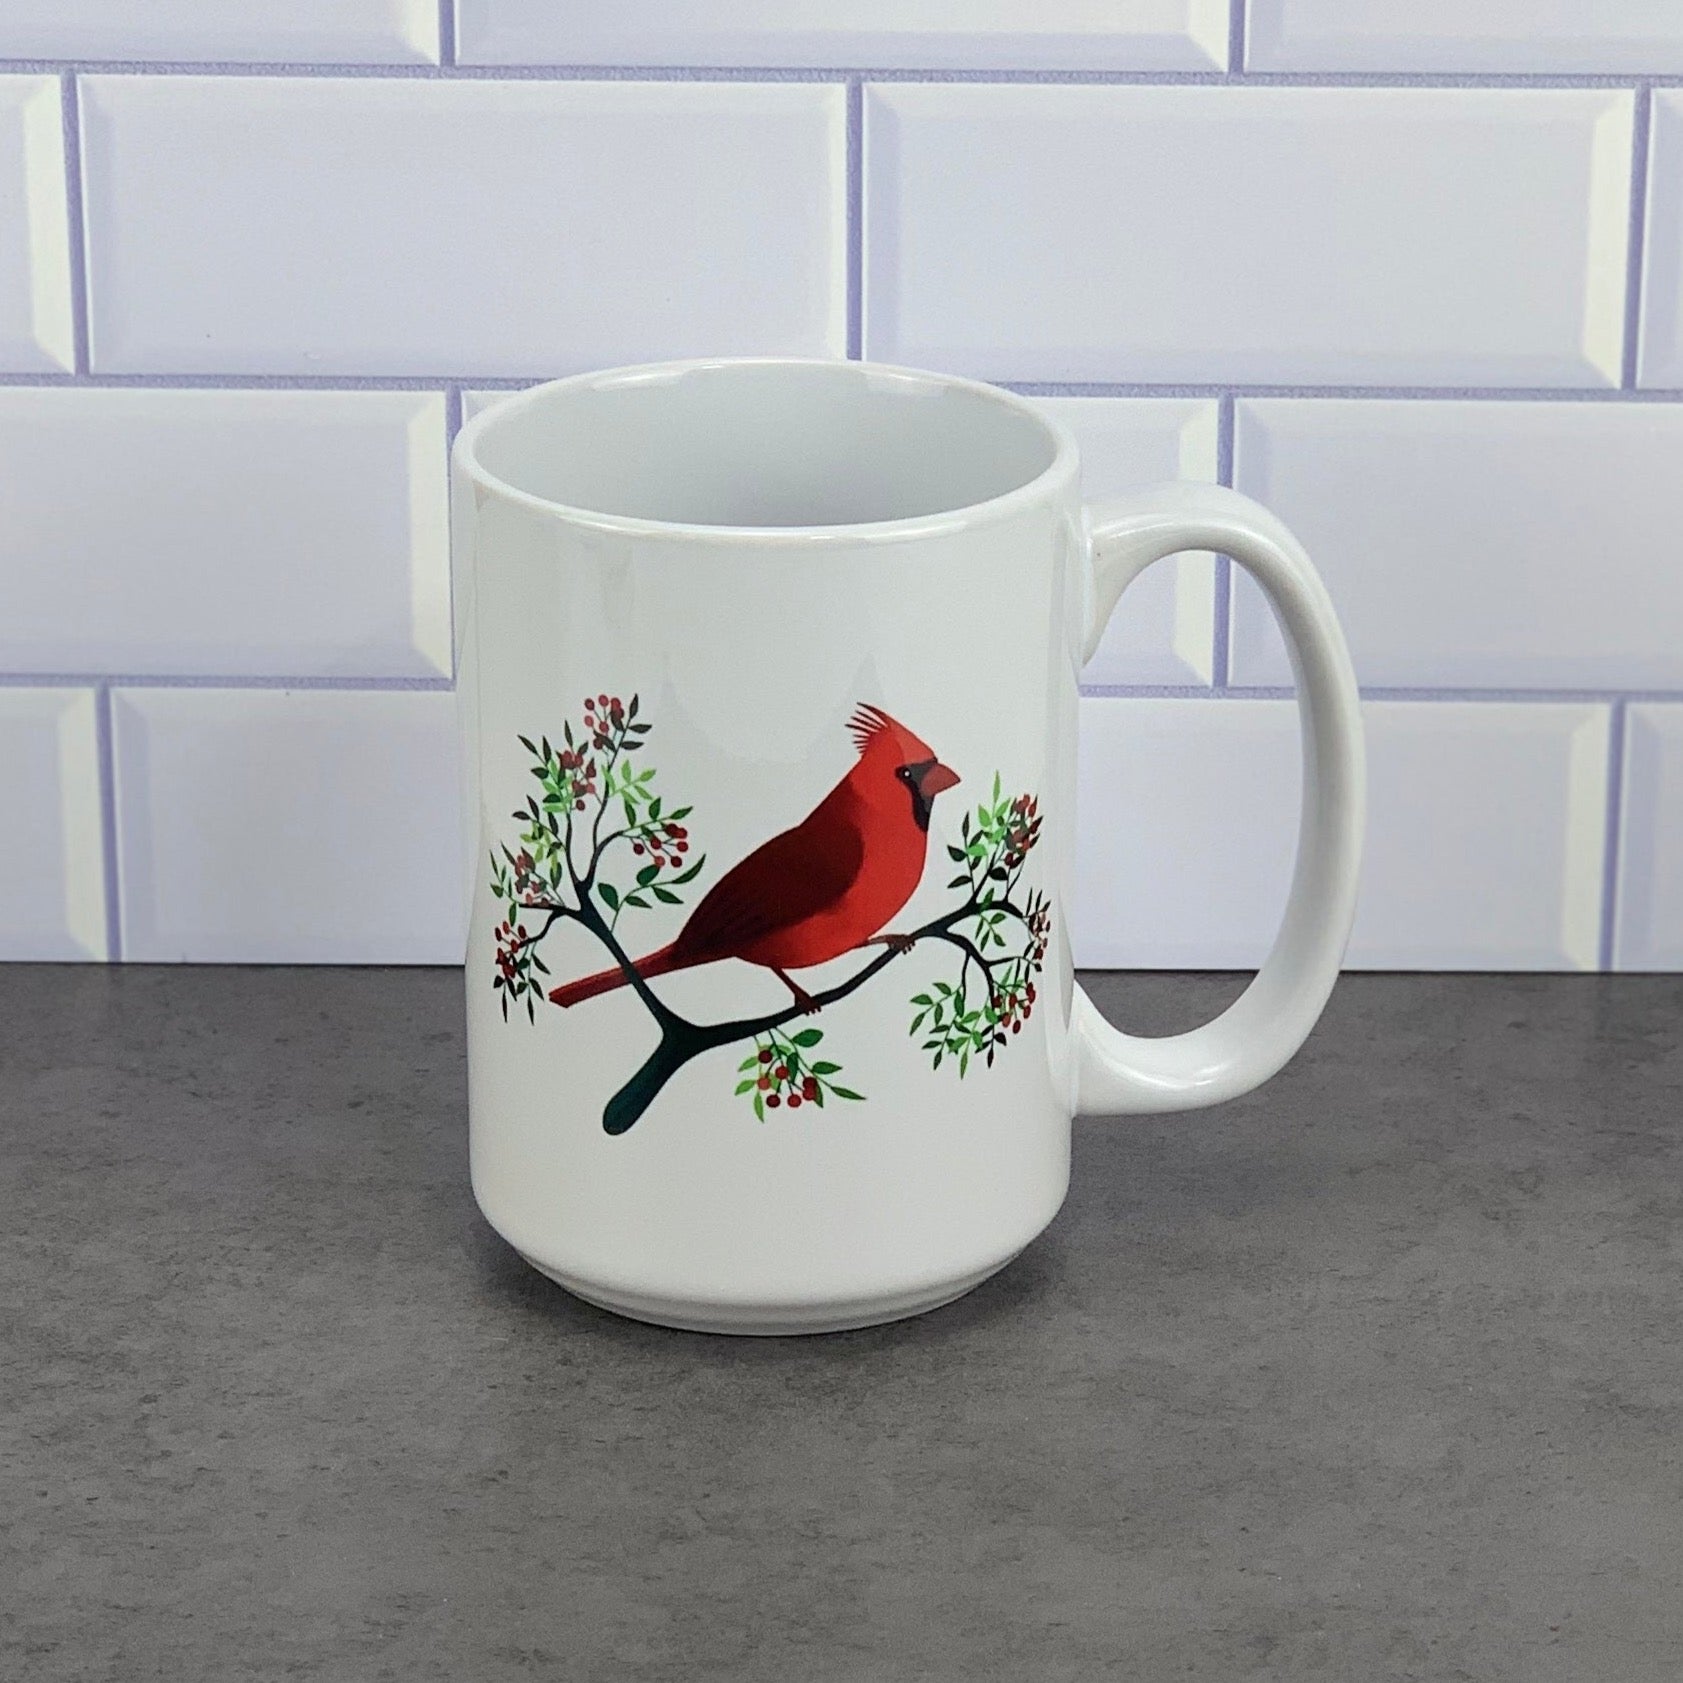 Red cardinal mug